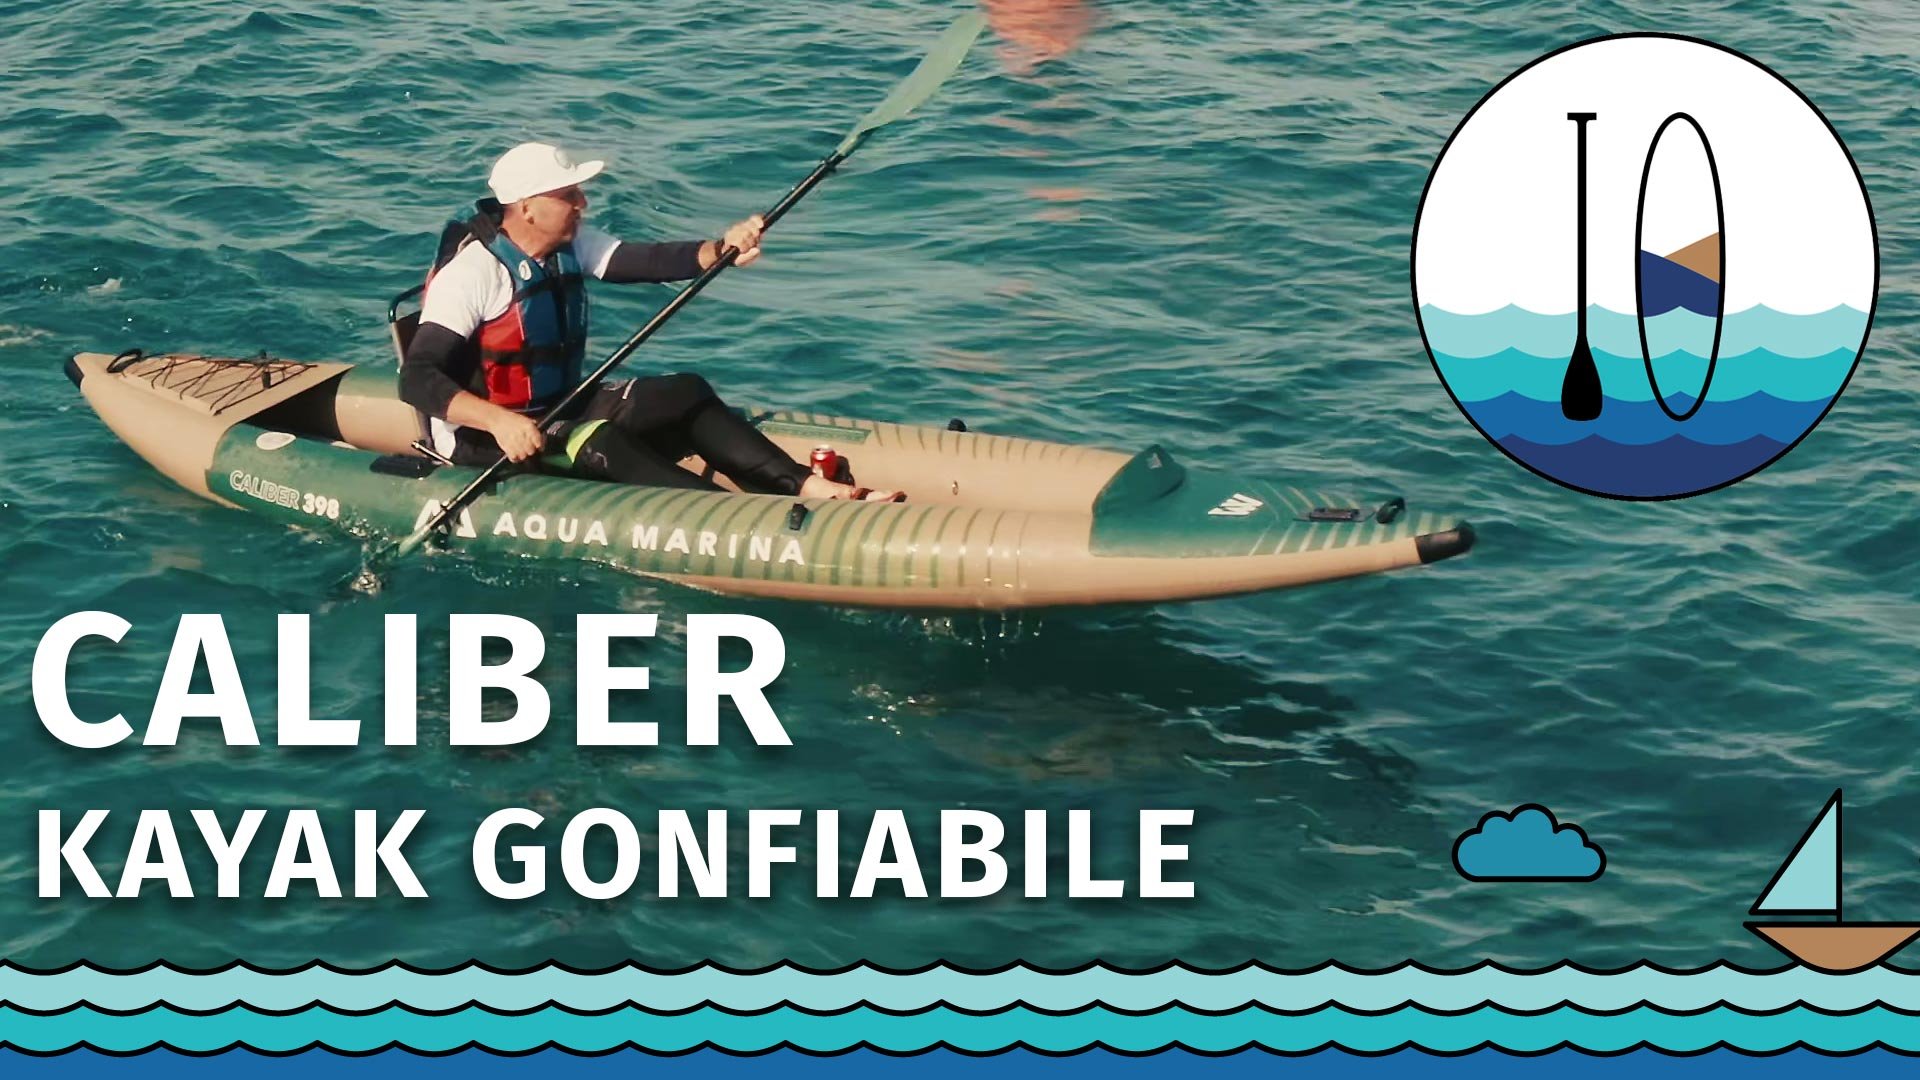 Kayak gonfiabile AQUA MARINA CALIBER per la pesca